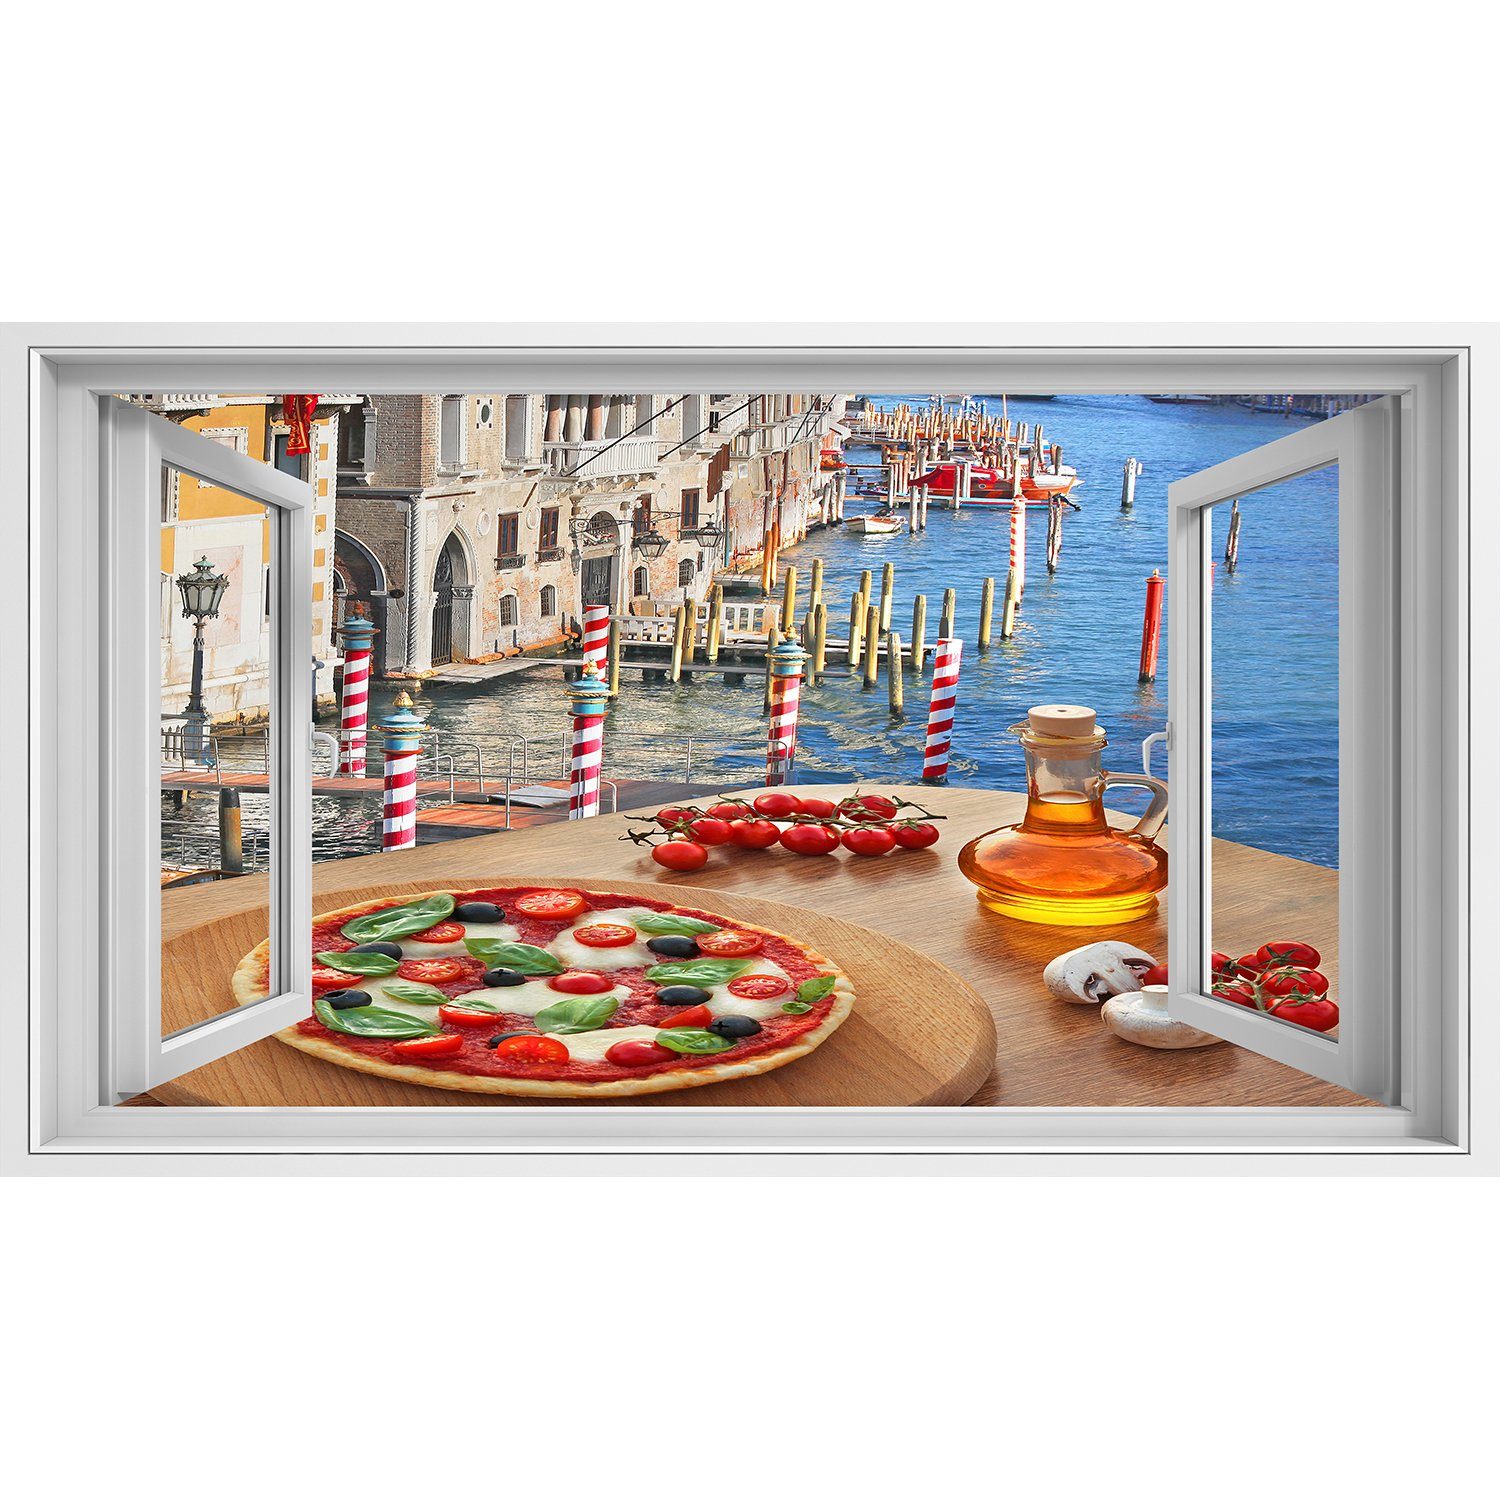 islandburner Leinwandbild Fensterblick Klassische italienische Pizza in Venedig gegen Kanal Ital